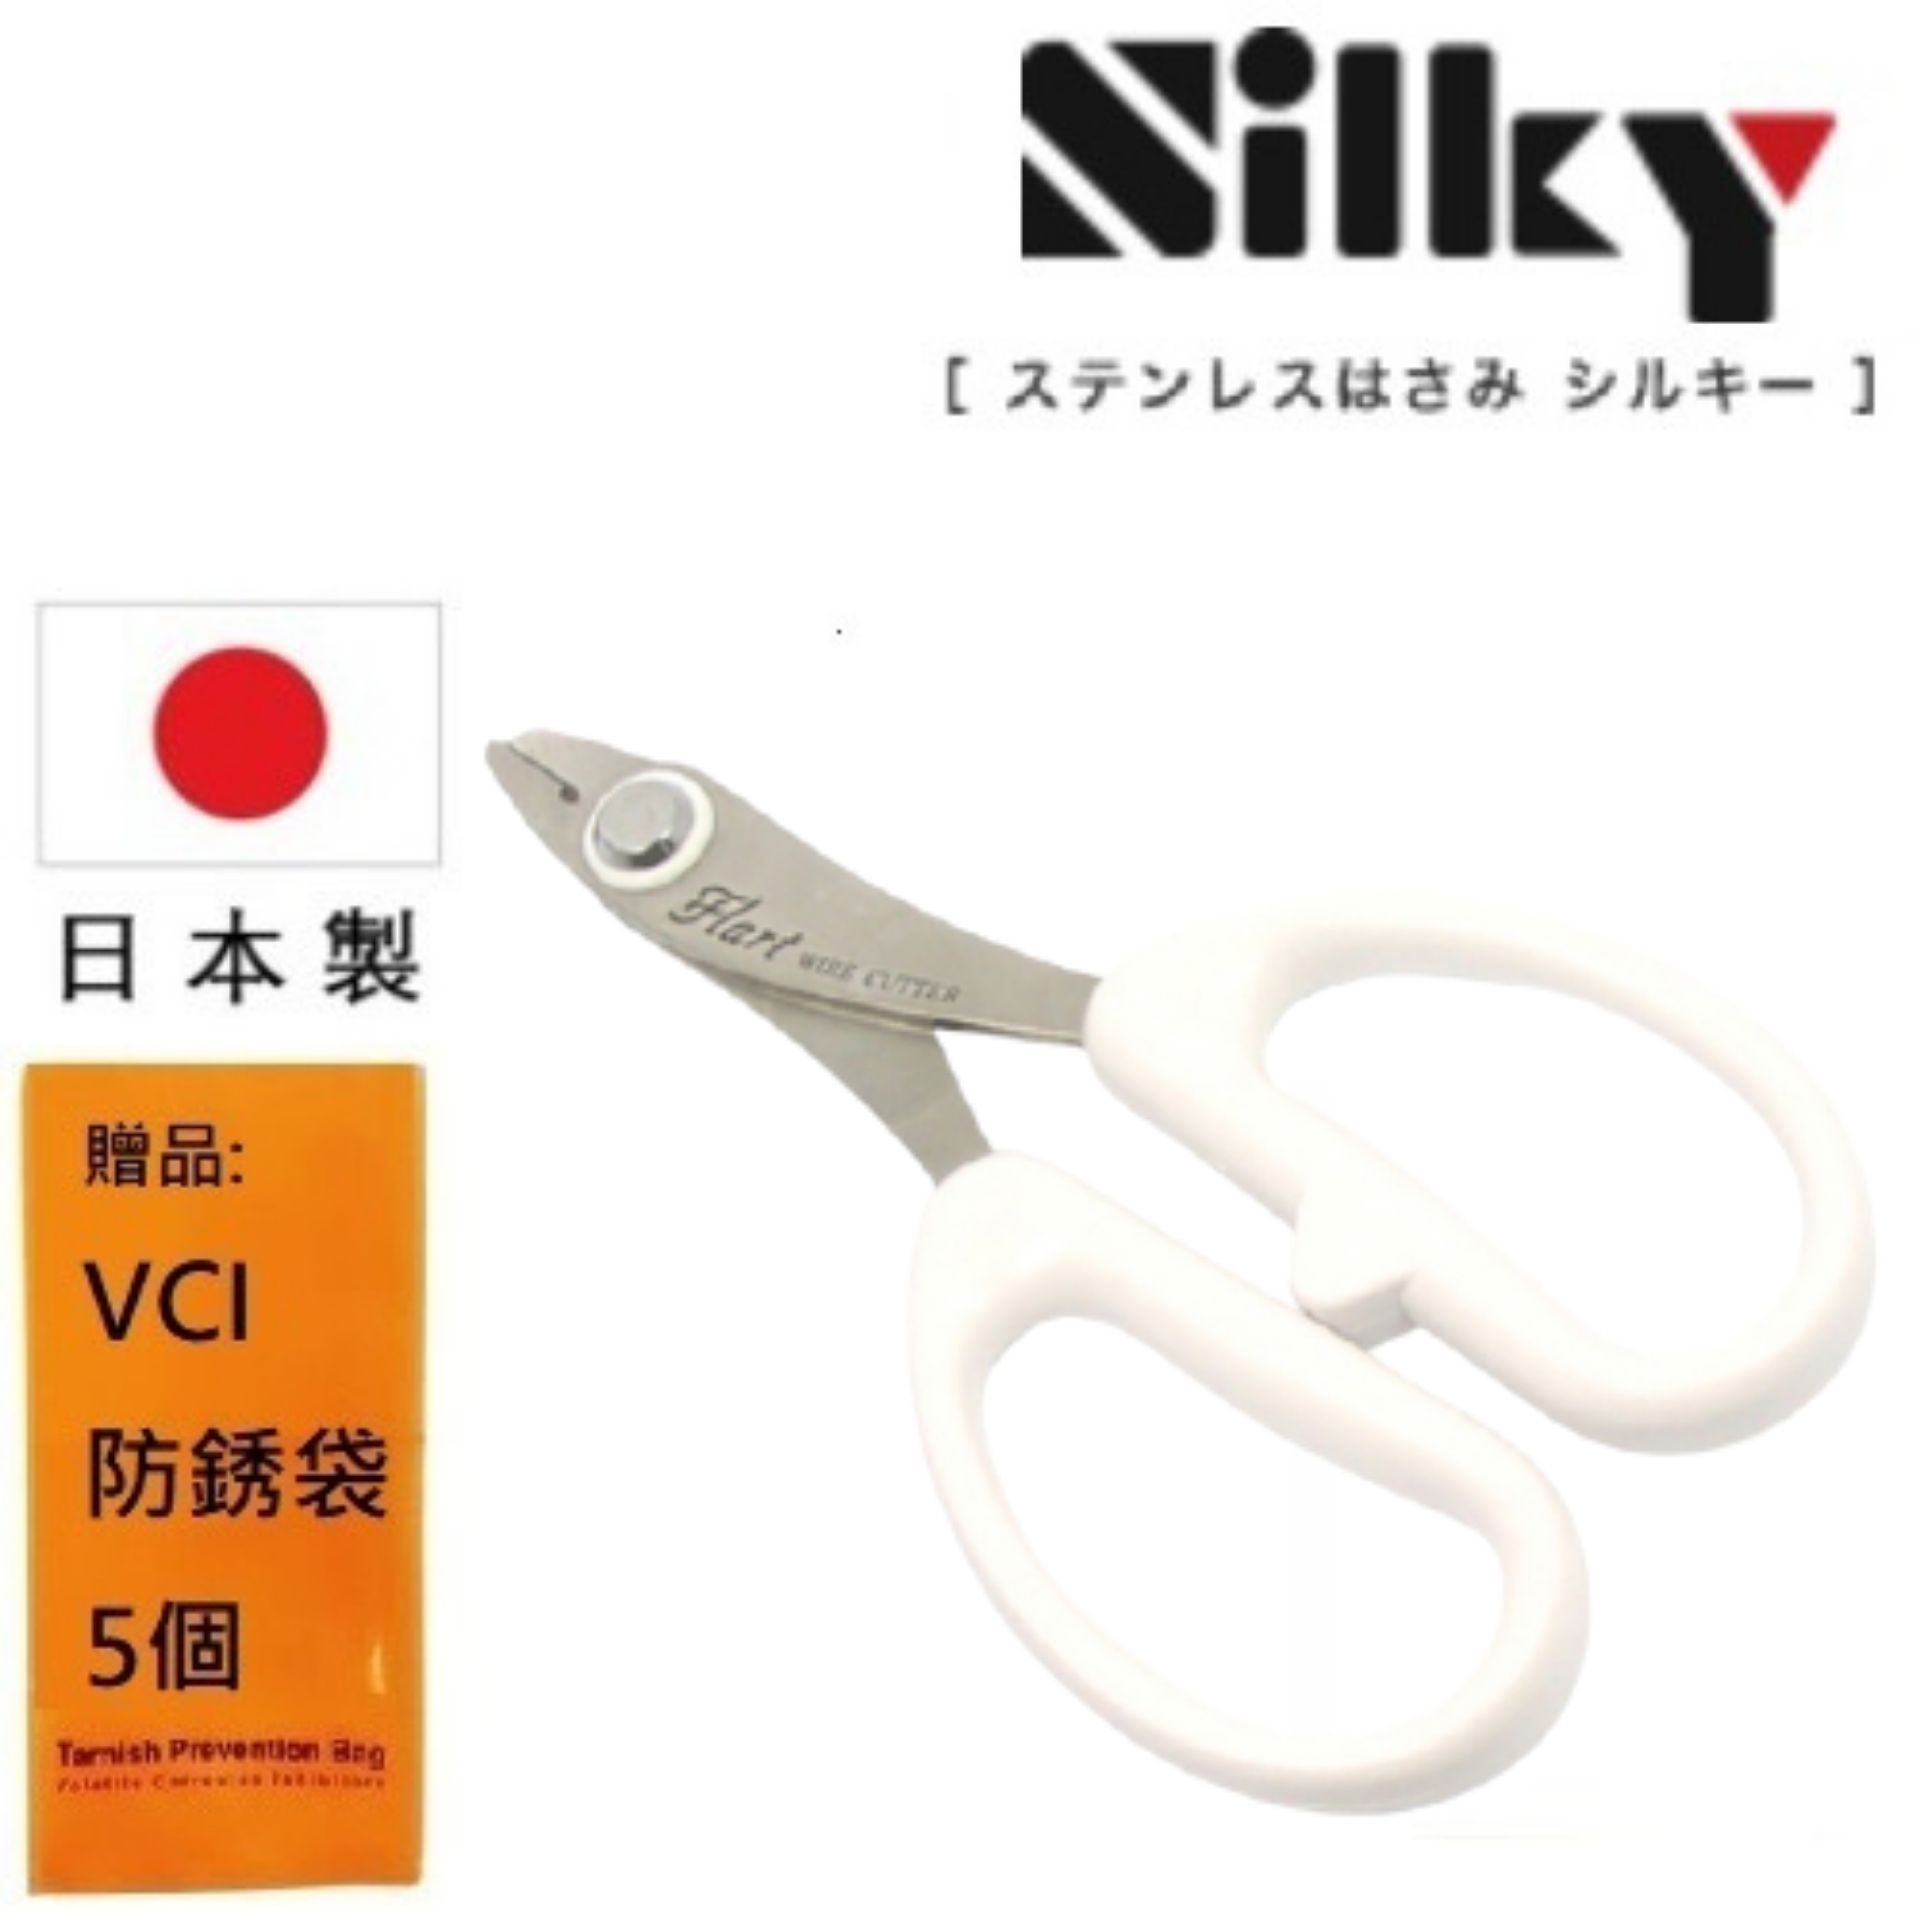 【日本SILKY】鐵絲專用剪刀-145mm 鍛治、傳承鐵匠靈魂的一把剪刀